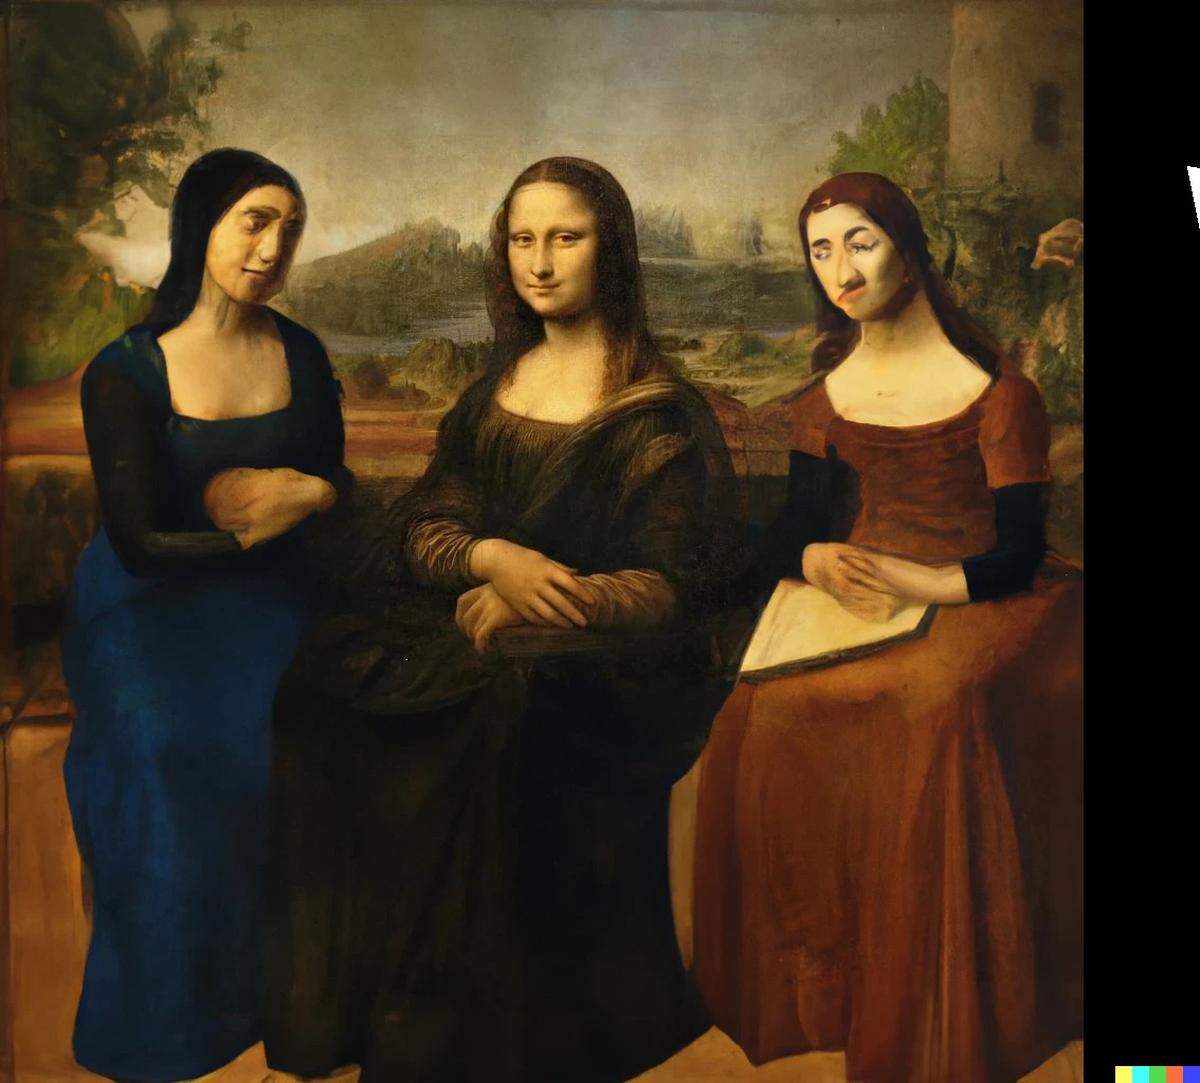 <strong>Neben Mona Lisa. </strong>Auch bestehende Bilder kann Dall-E 2 erweitern. Und etwa um die Mona Lisa ein „italian renaissance painting of 3 women on a park bench“ malen. Typische Schwäche: die verformten Gesichter und Gliedmaßen der Figuren.